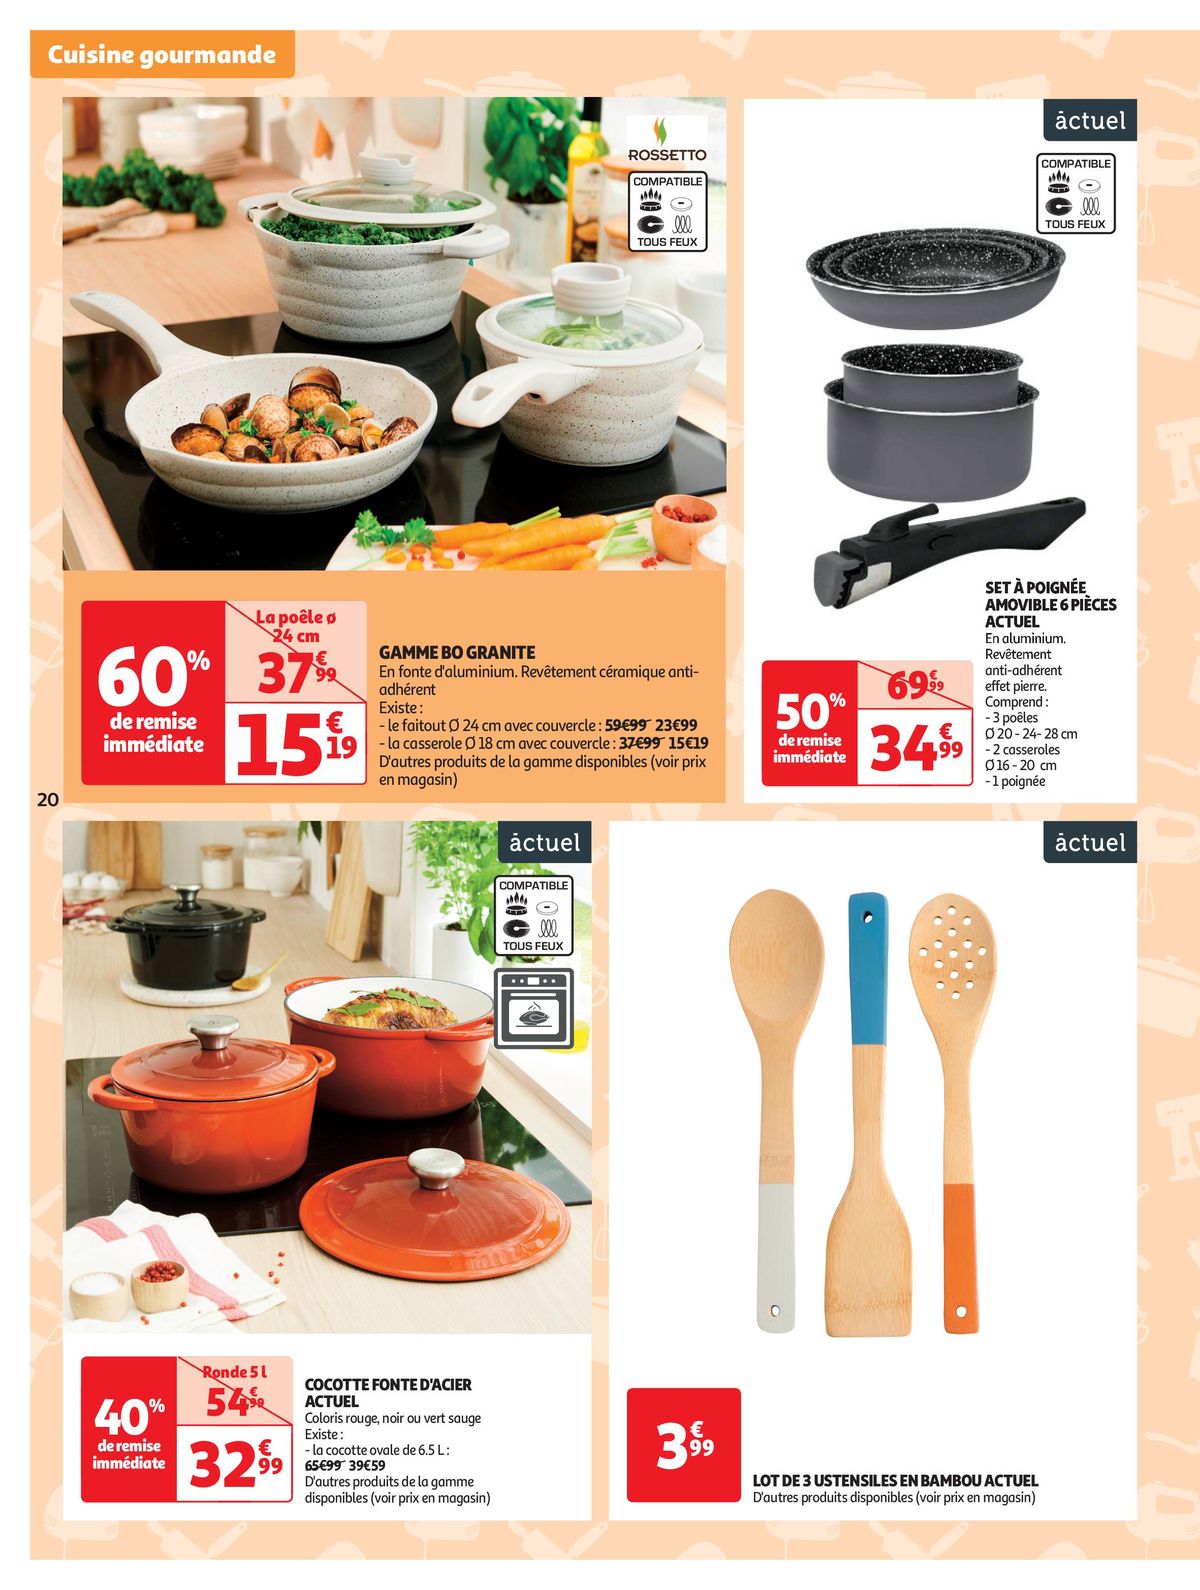 Catalogue Spécial Cuisine Gourmane dans votre supermarché, page 00020